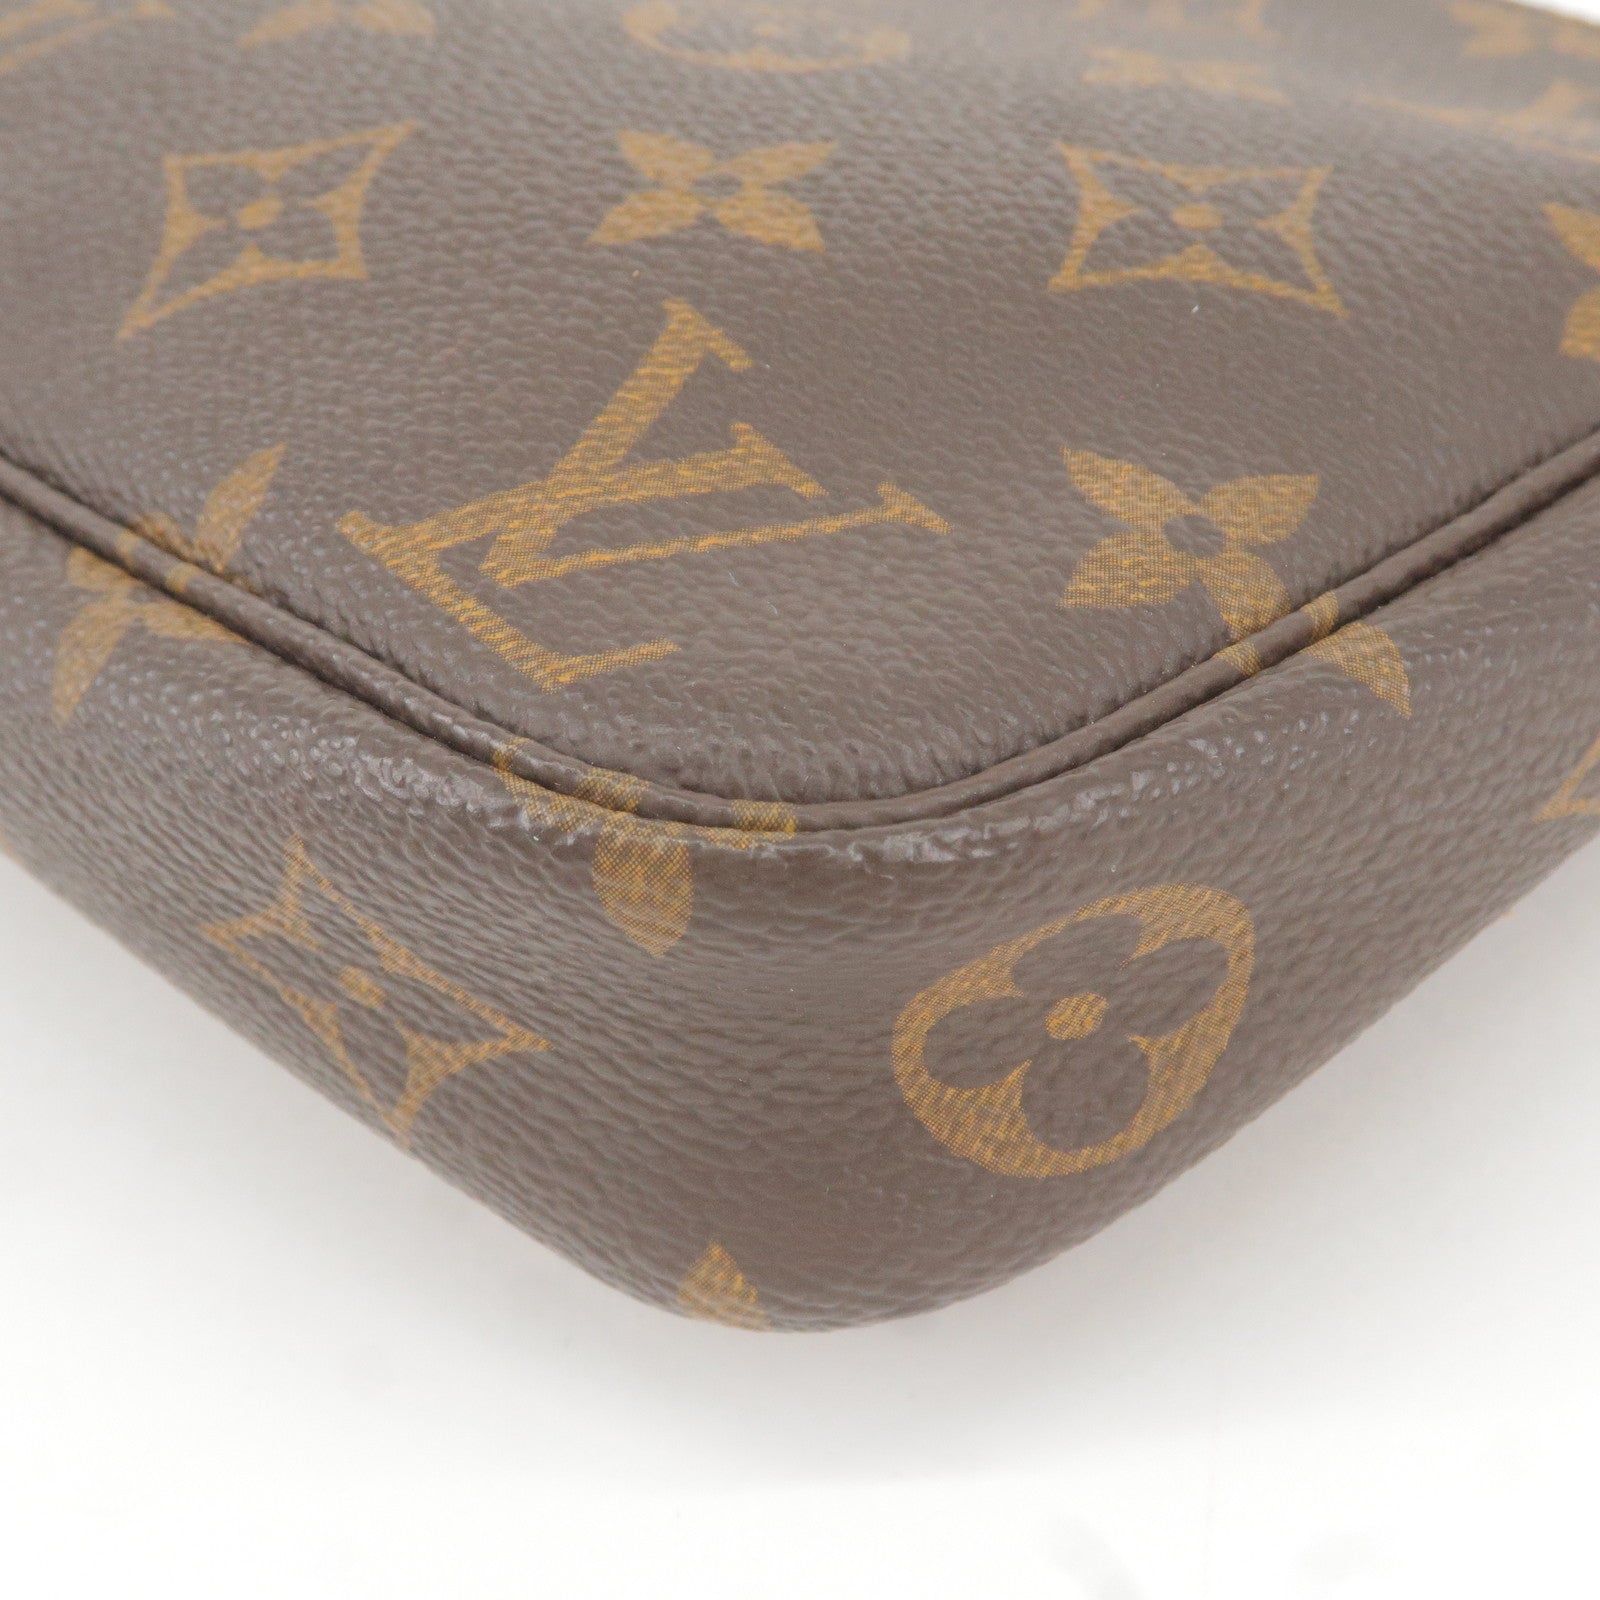 Accessoires - M51980 – Louis Vuitton s Game On collection - Monogram -  Vuitton - Bag - Pochette - Hand - beyonce virgil abloh jeff koons louis  vuitton custom bag - Louis